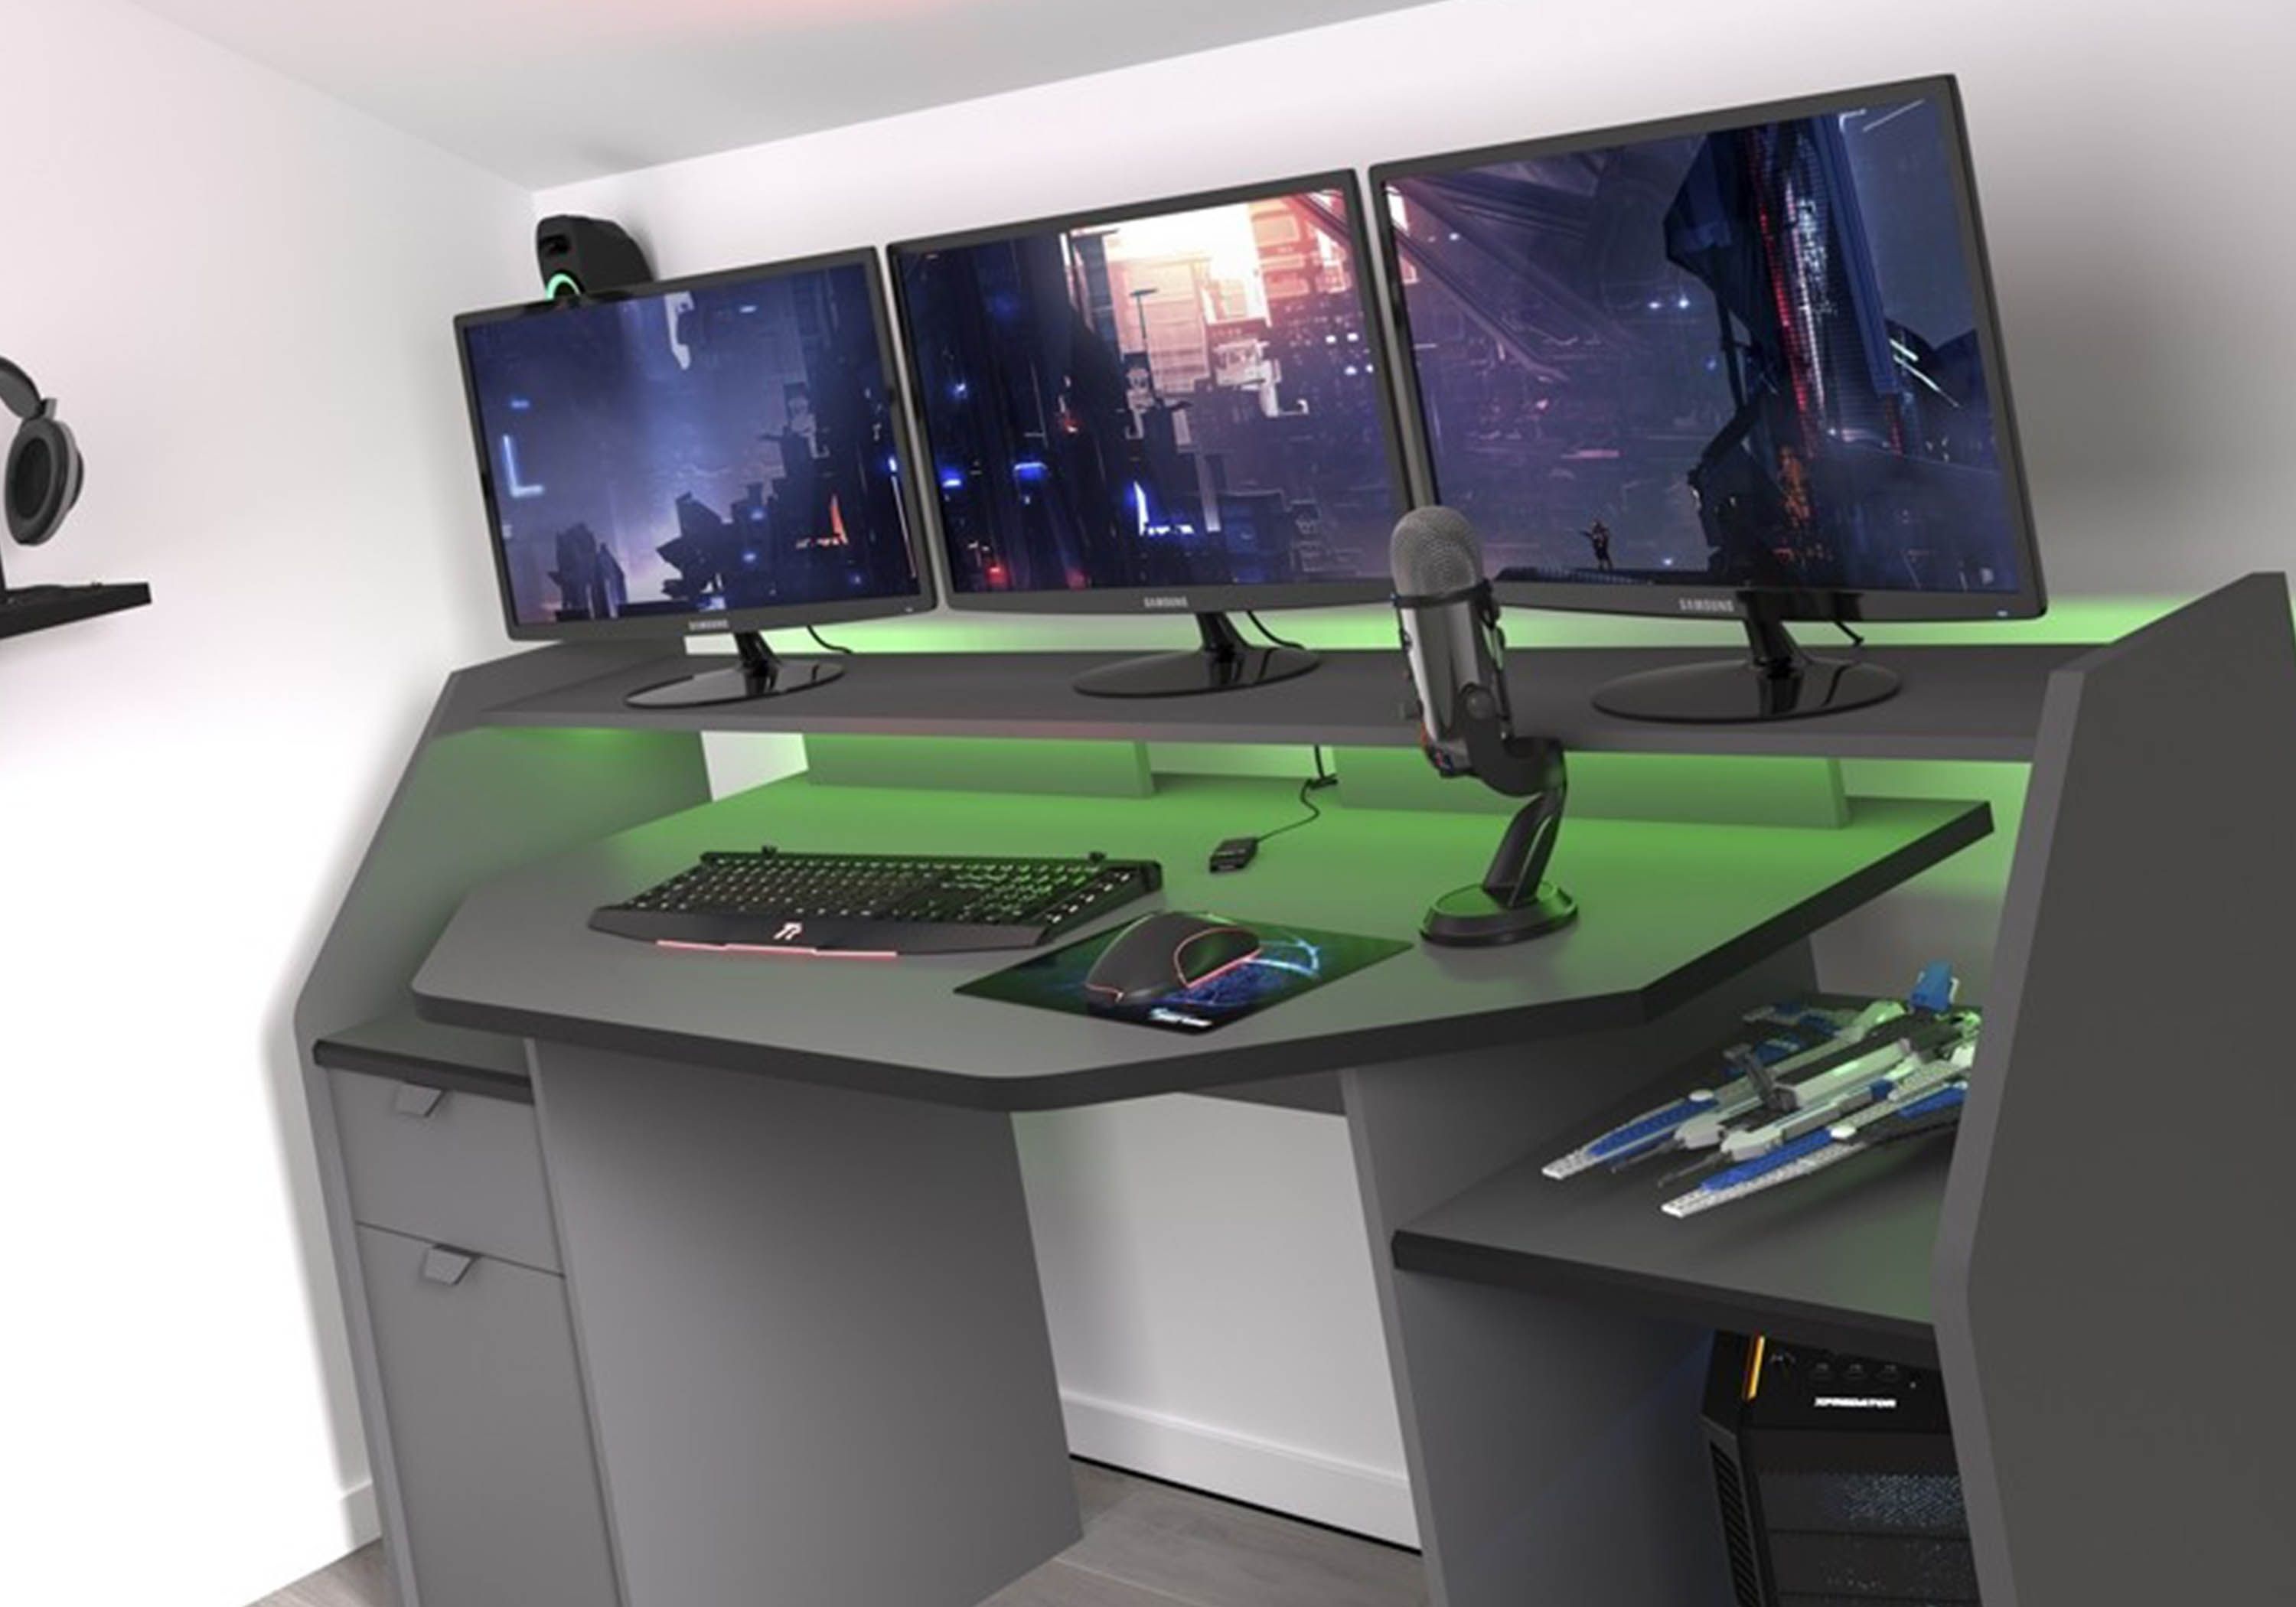 Parisot Setup Gaming Desk